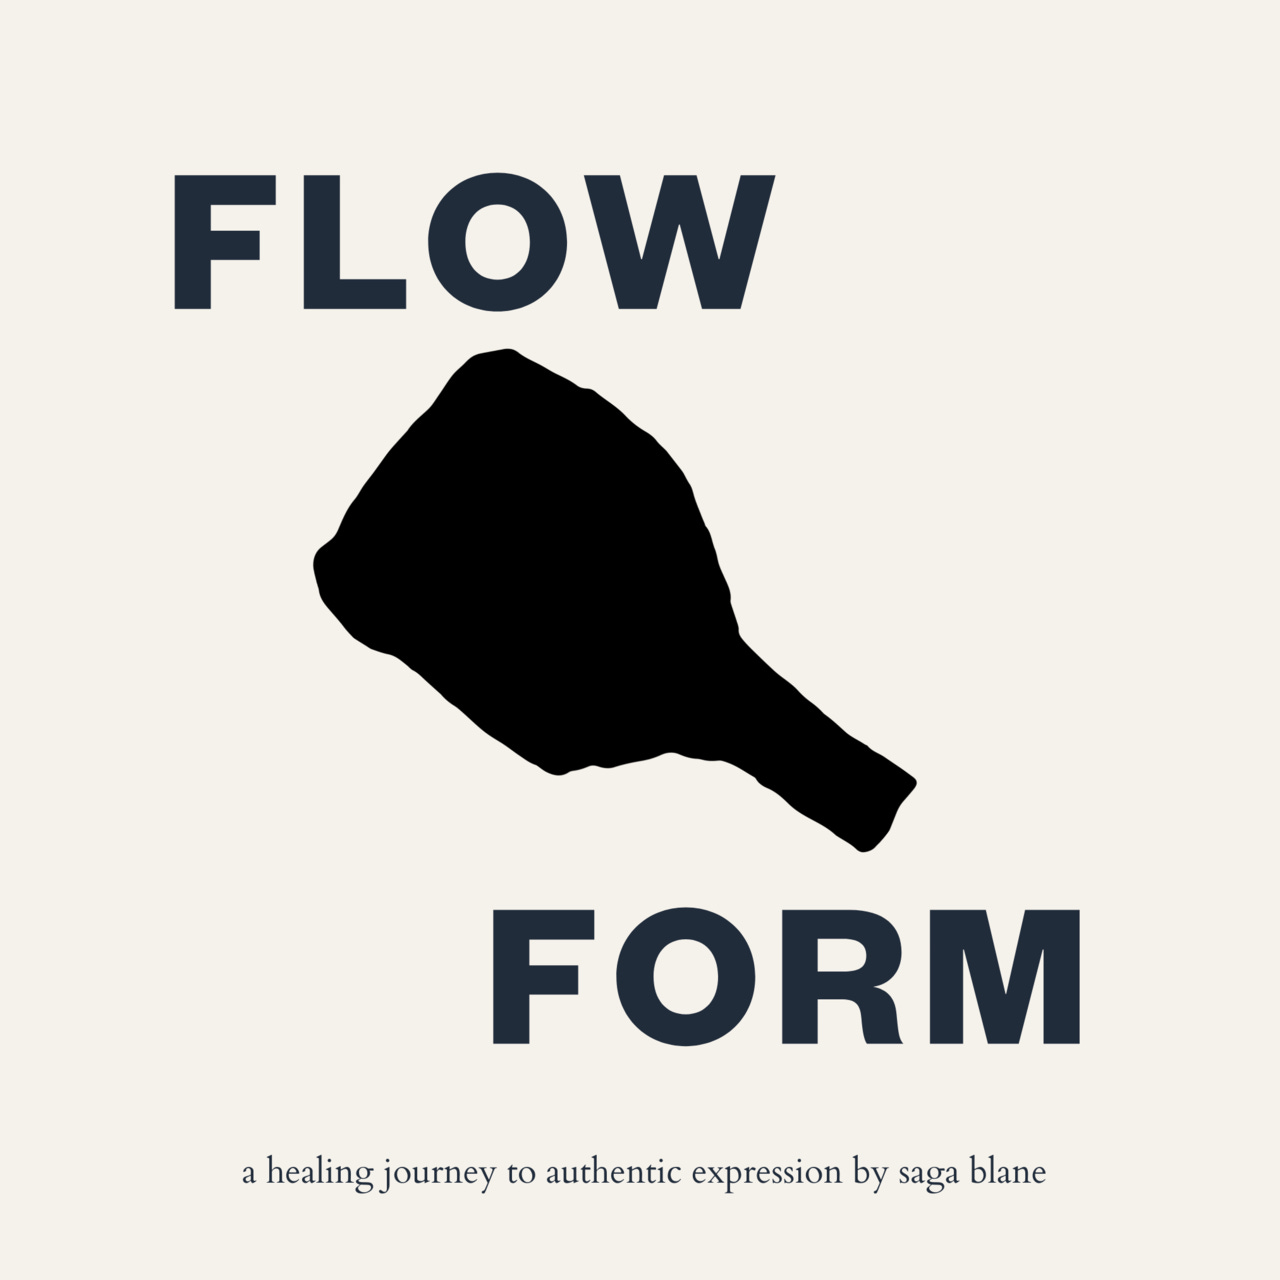 Artwork for FlowForm by Saga Blane